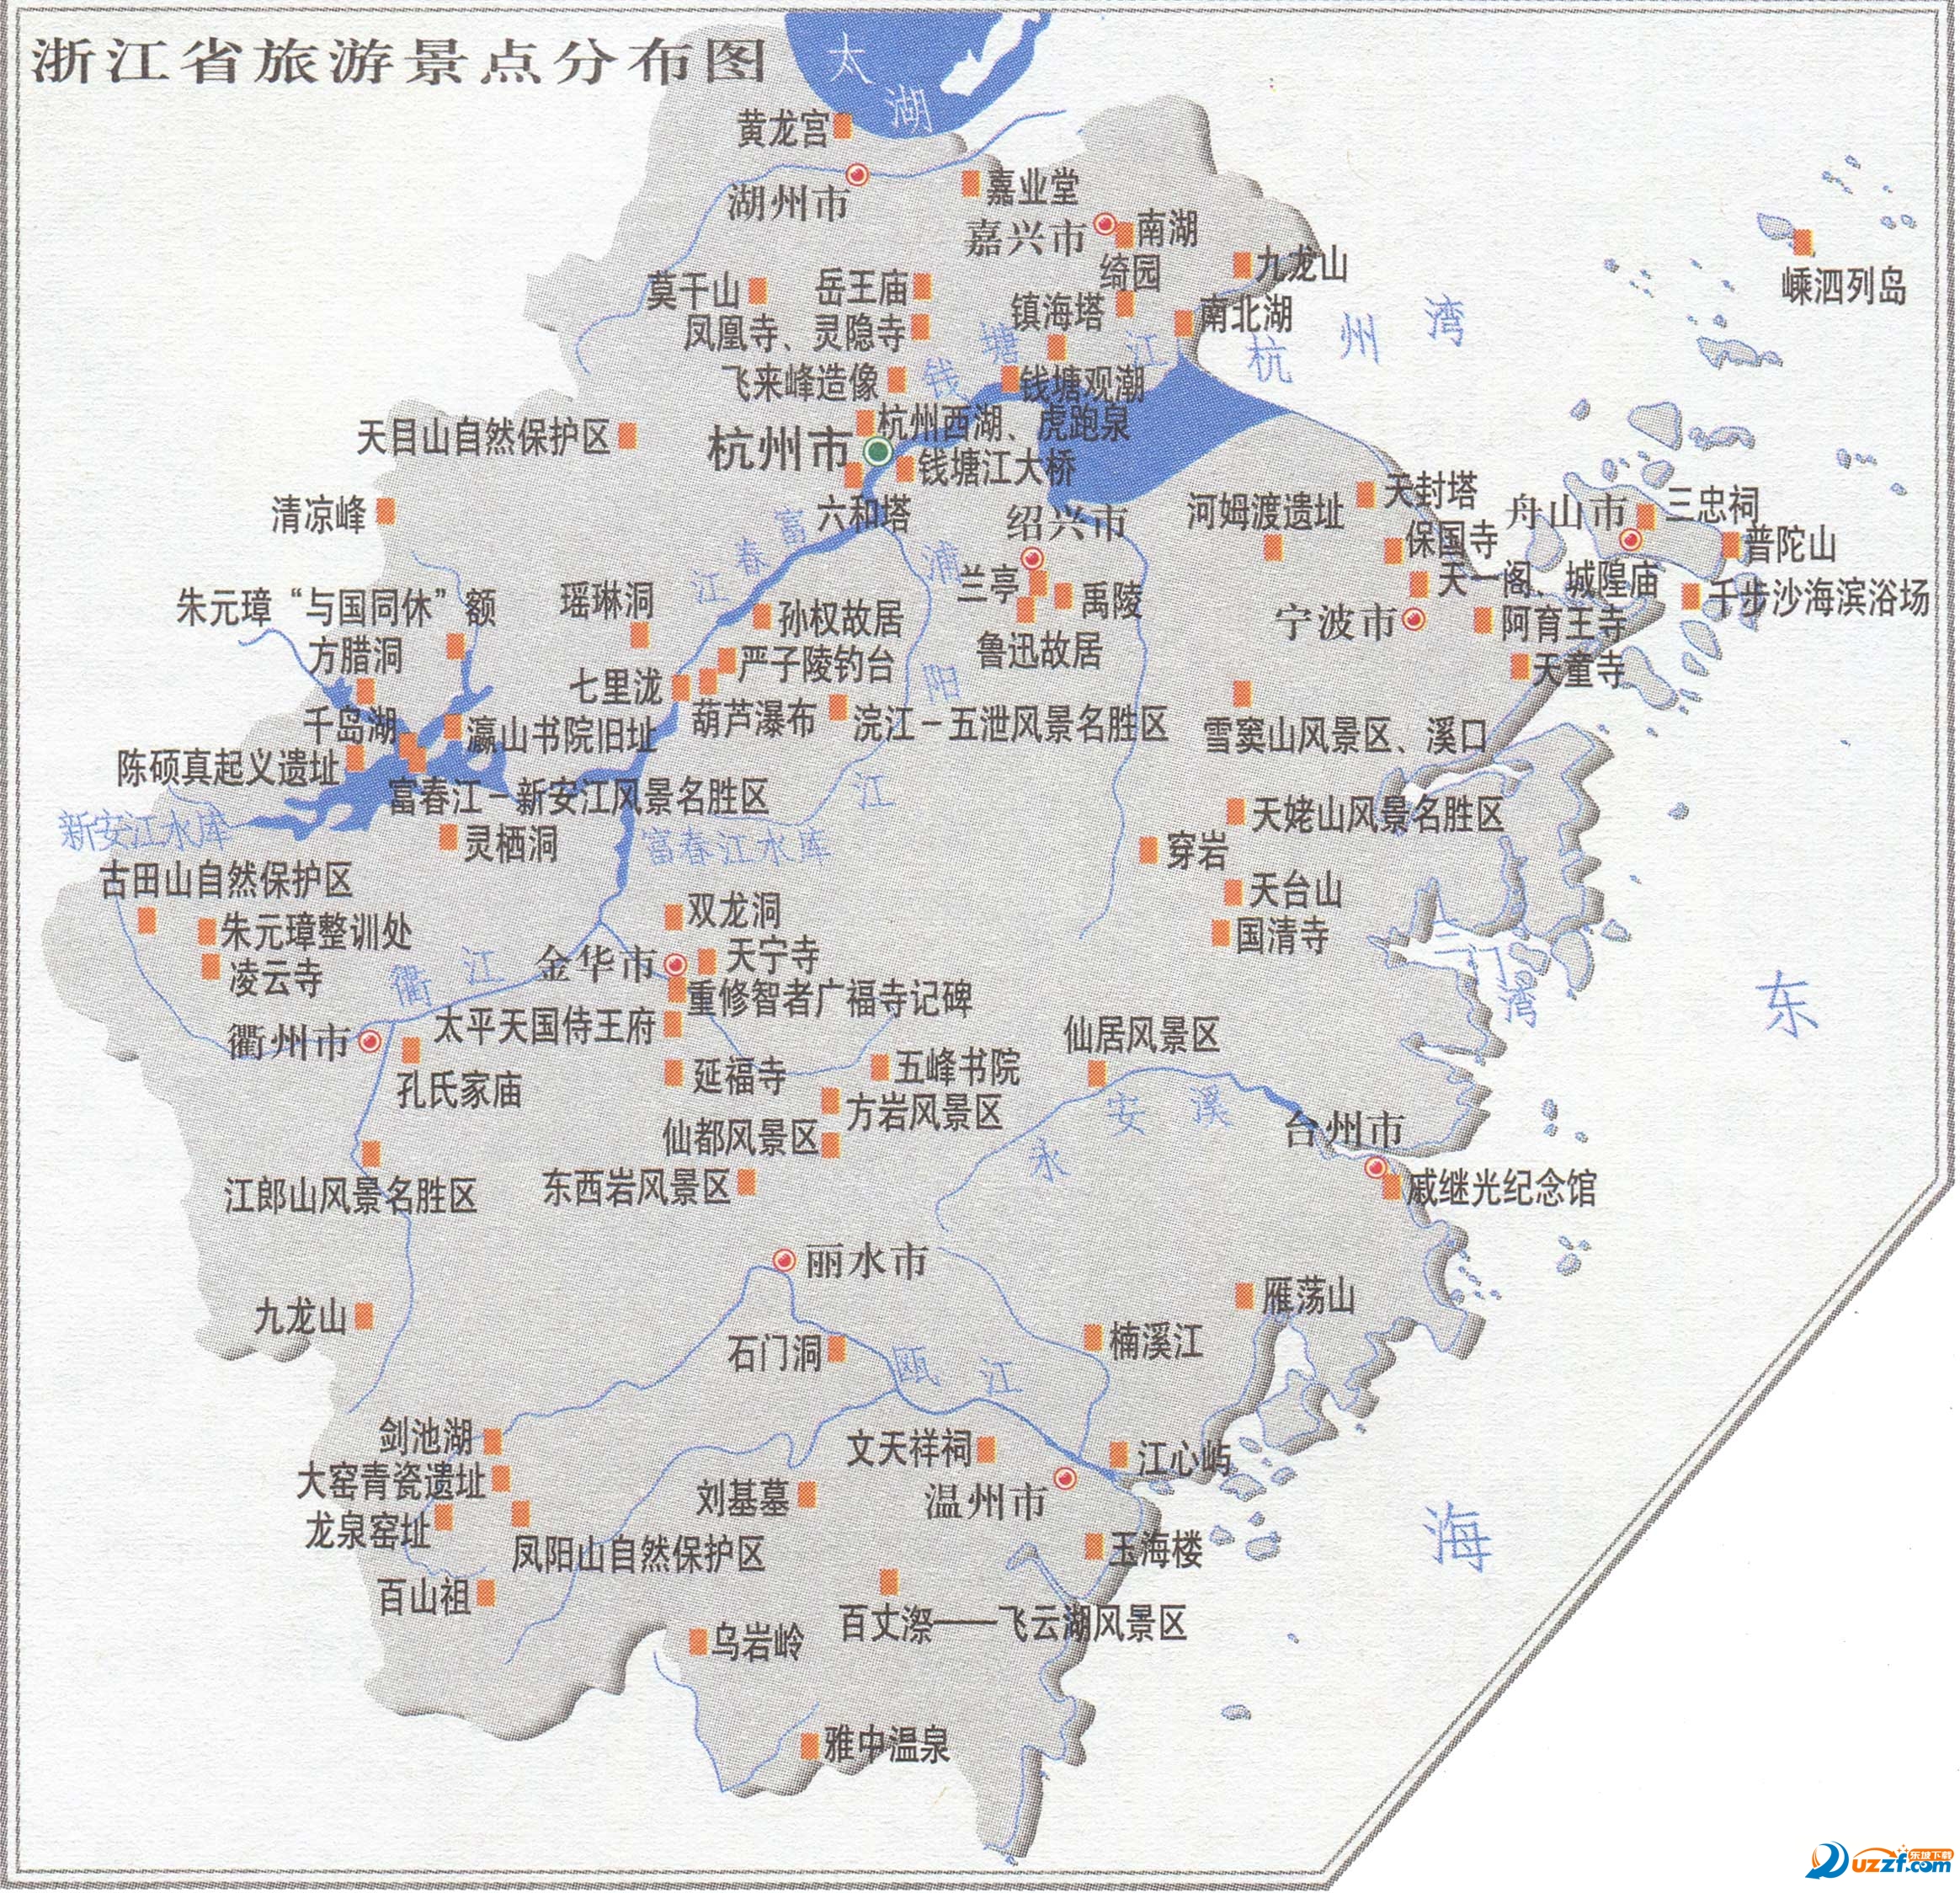 浙江旅游地图高清版大图 截图